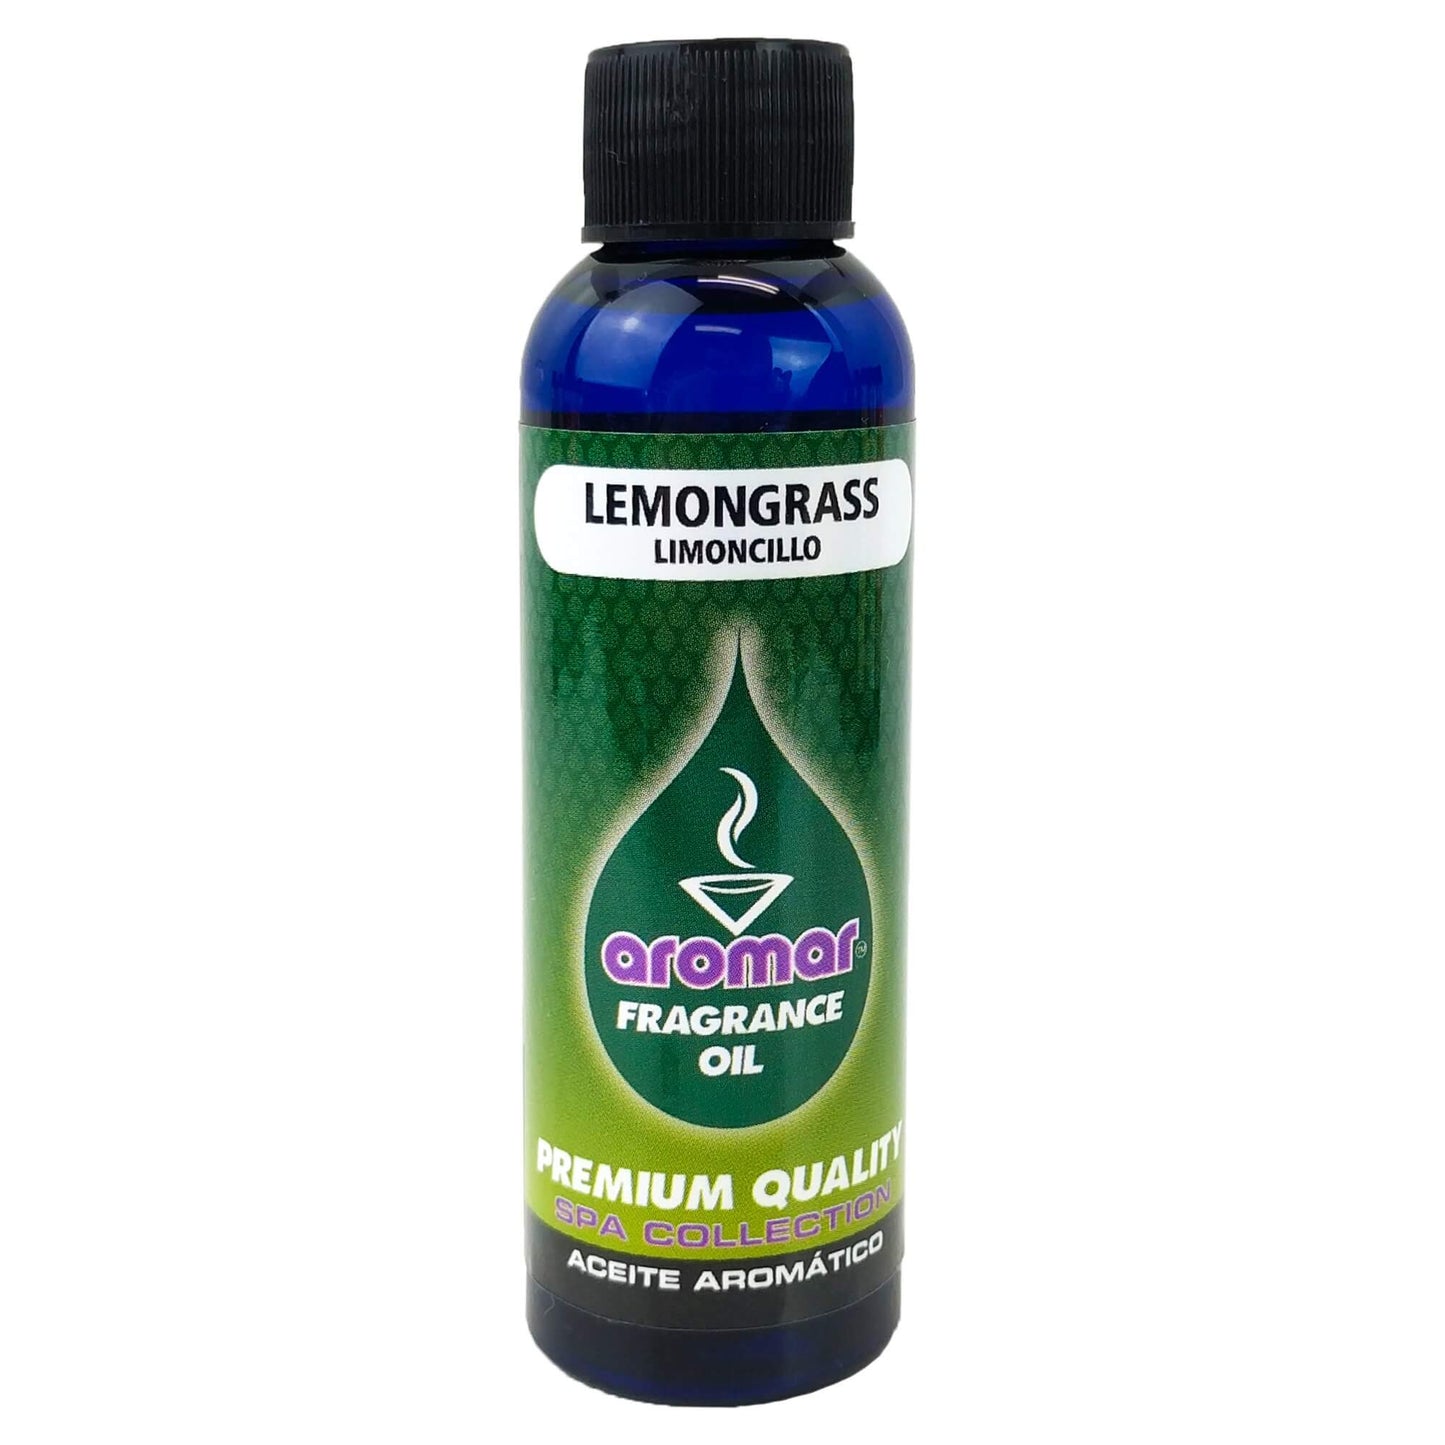 Lemongrass Scent Aromar Fragrance Oil, 2oz/60ml